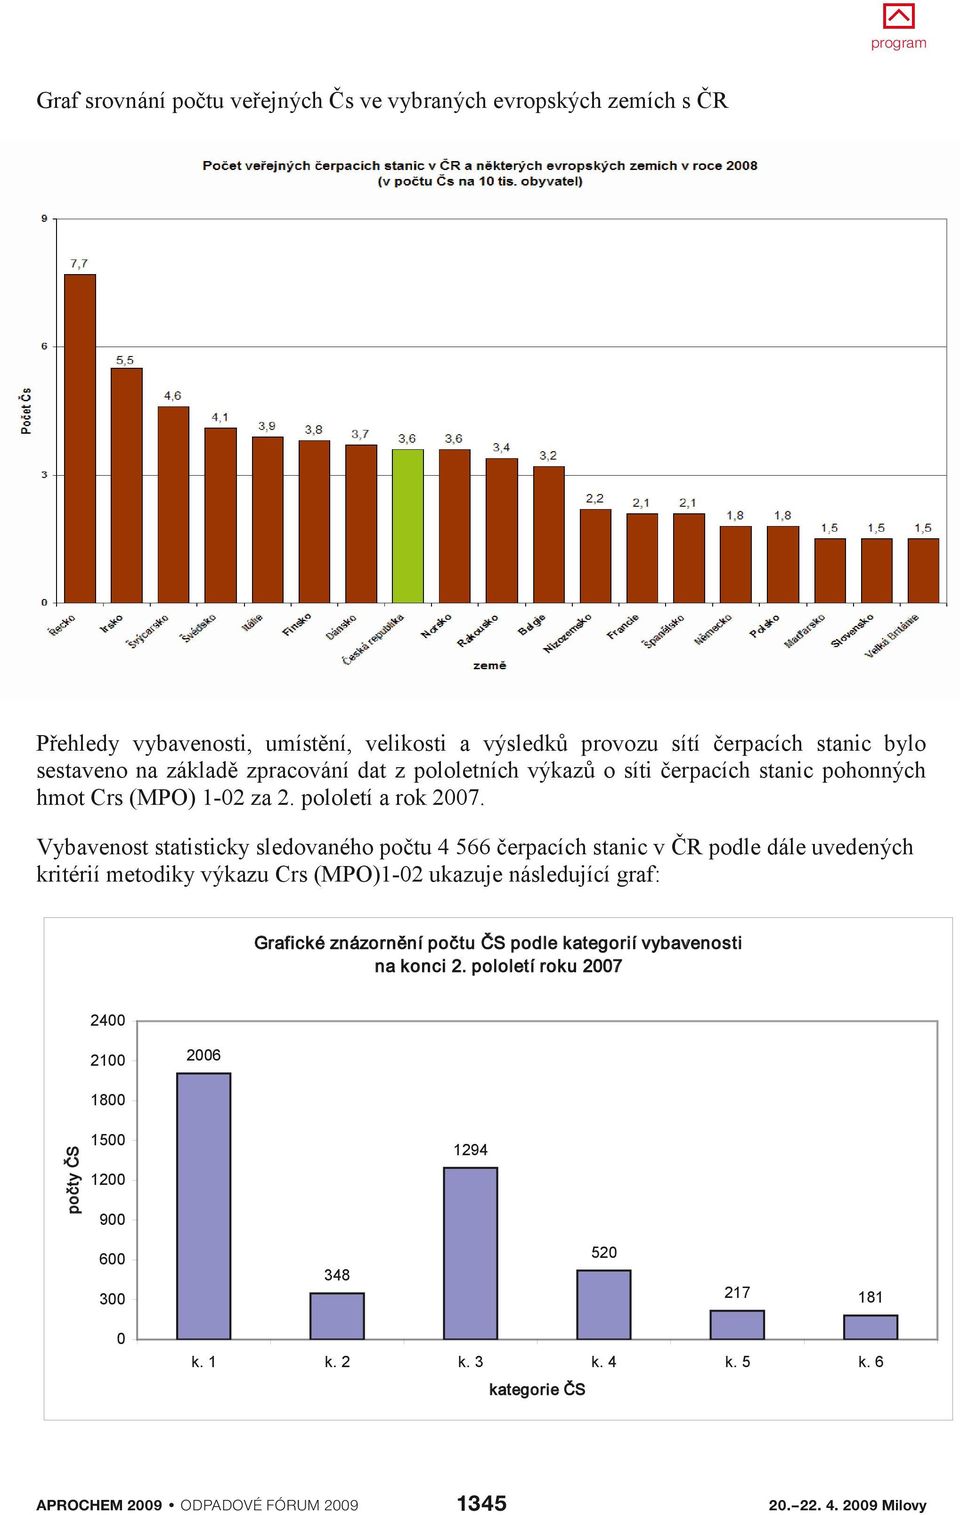 Vybavenost statisticky sledovaného počtu 4 566 čerpacích stanic v ČR podle dále uvedených kritérií metodiky výkazu Crs (MPO)1-02 ukazuje následující graf: